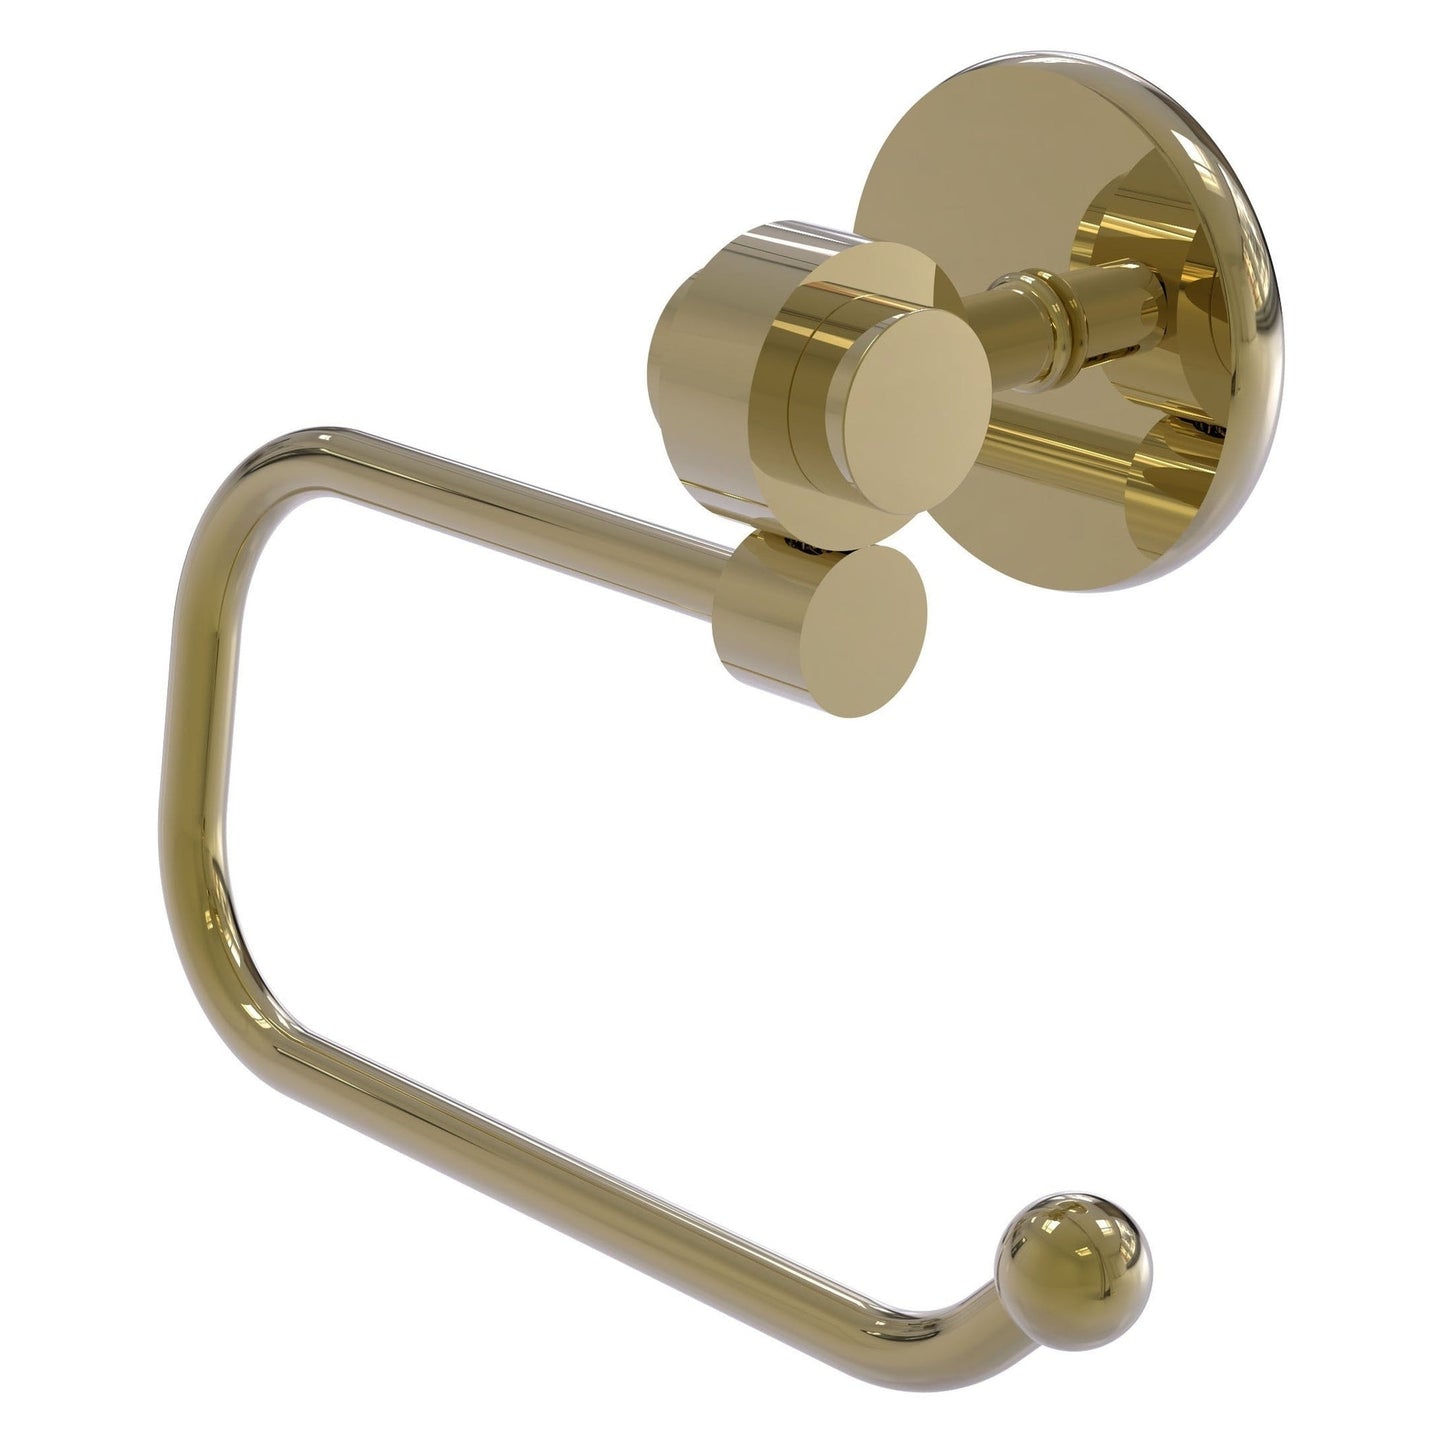 Allied Brass Satellite Orbit Two 7" x 2.6" Unlacquered Brass Solid Brass Euro-Style Toilet Tissue Holder